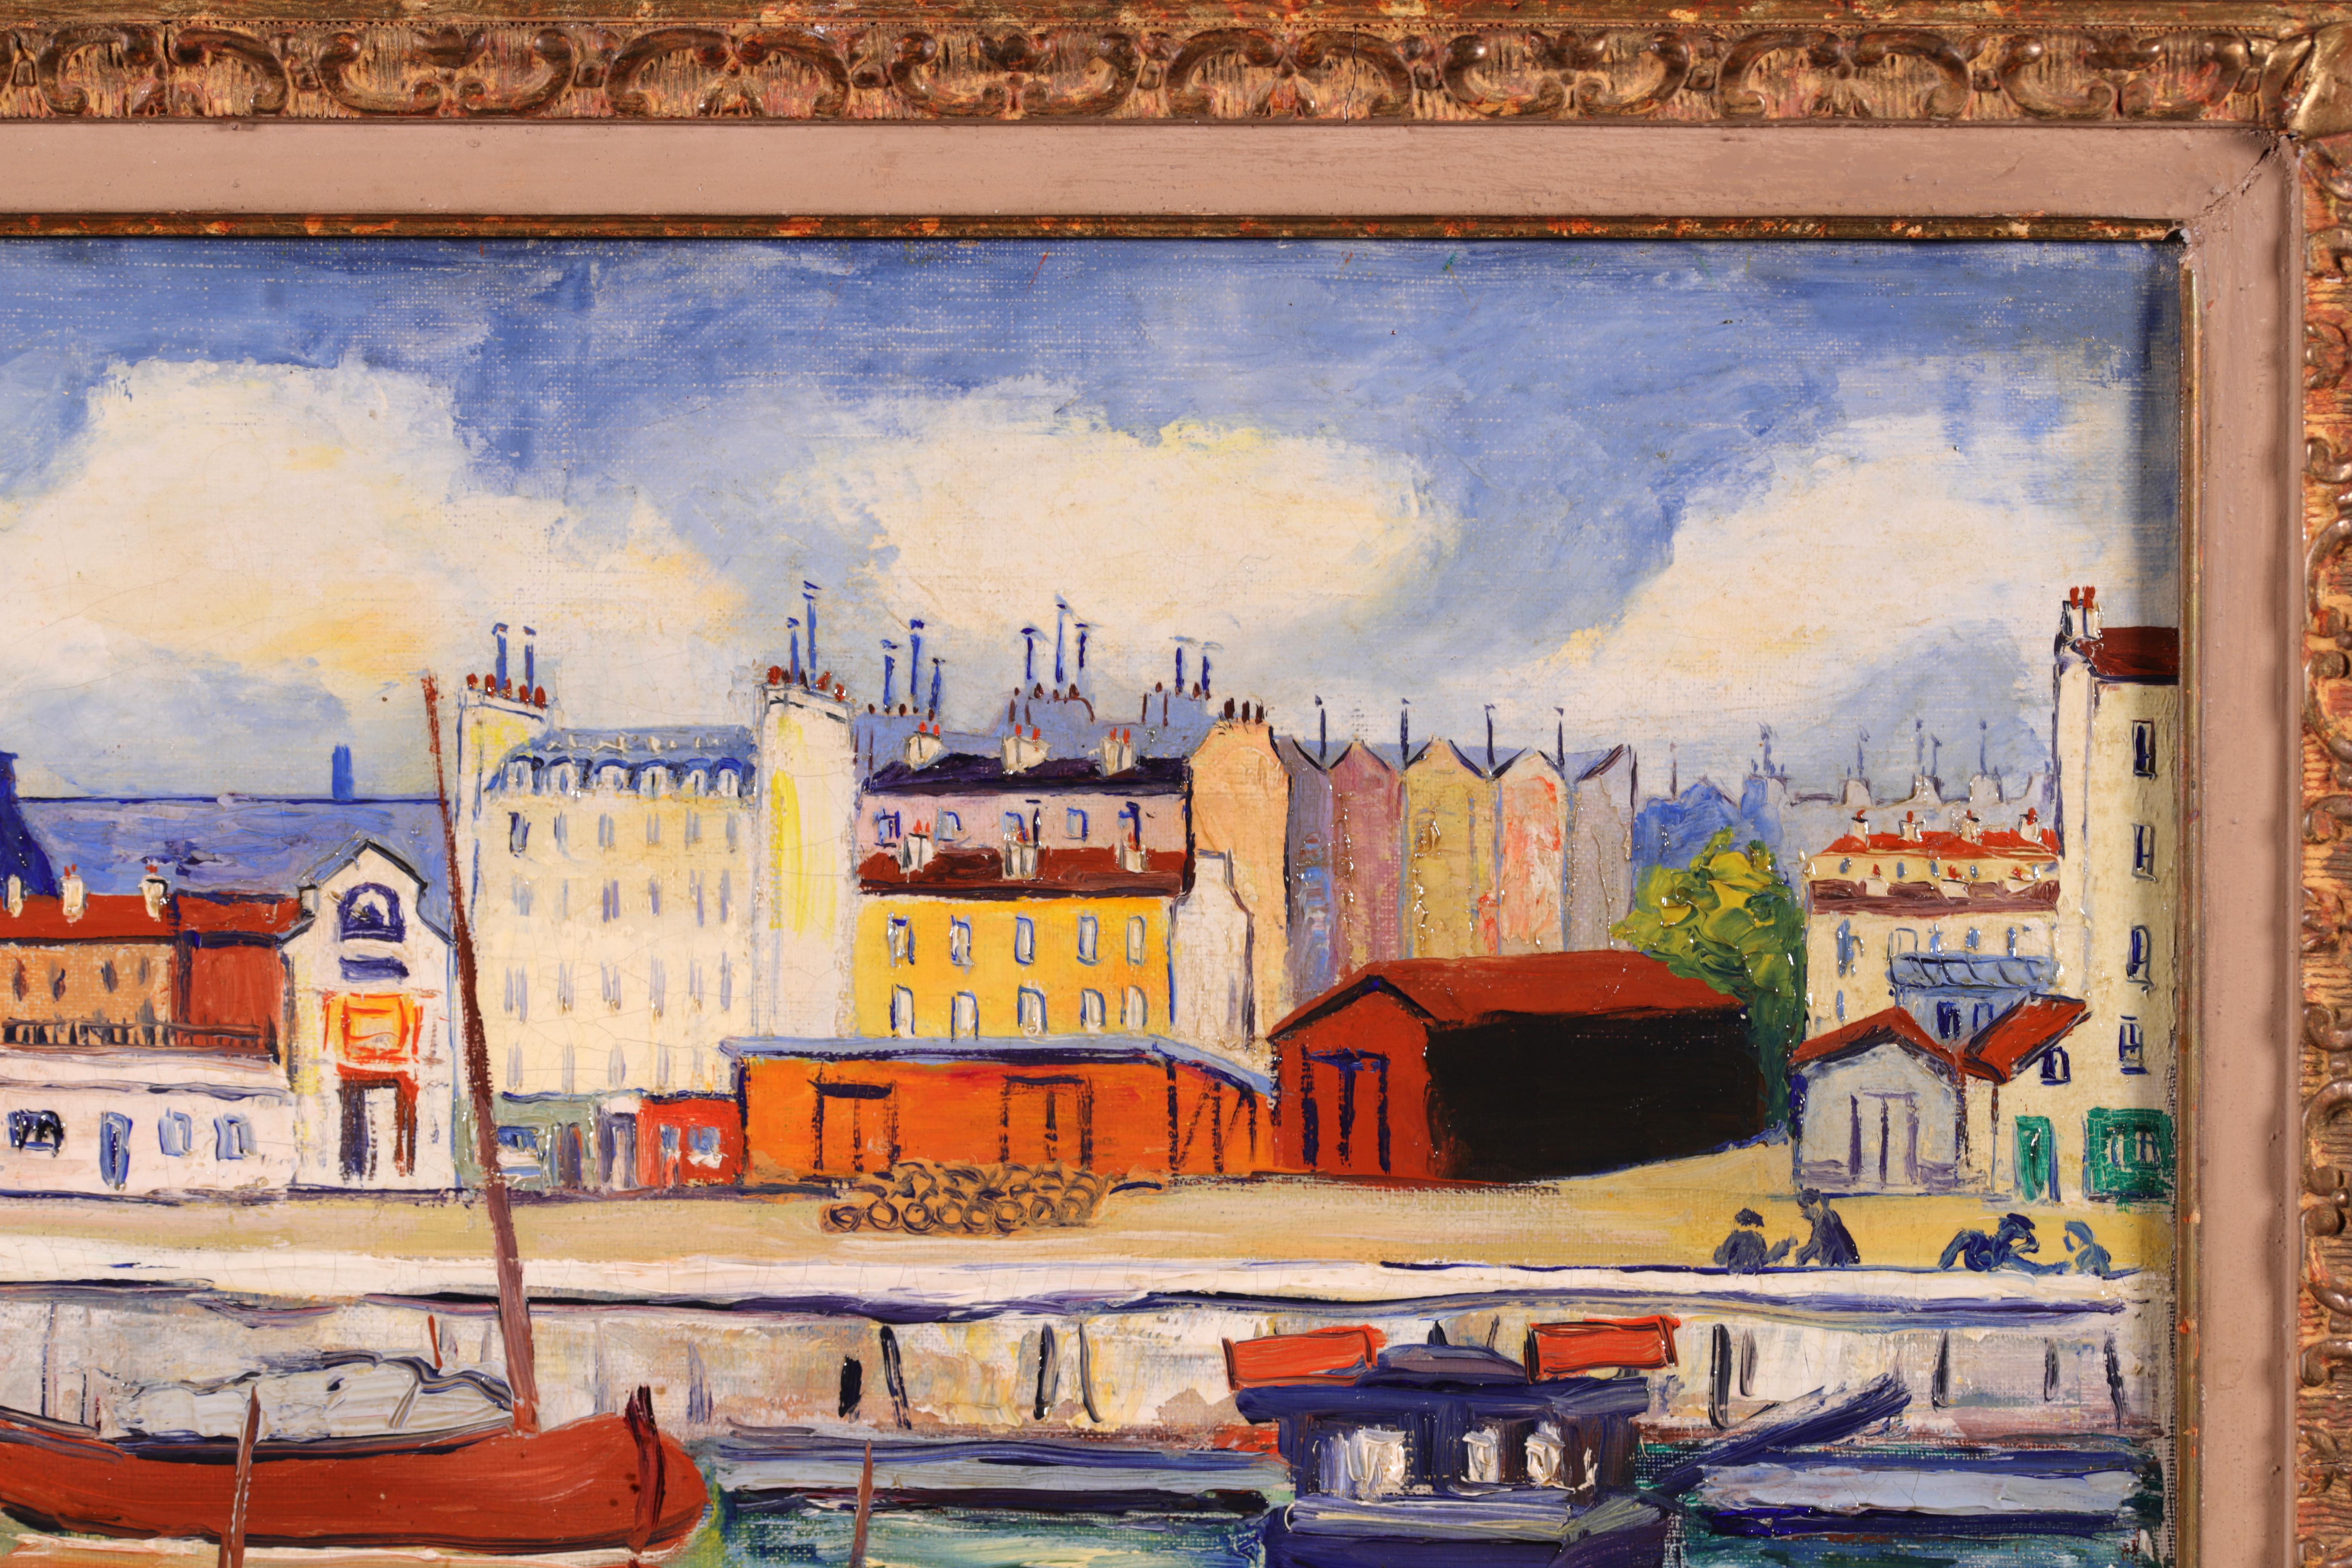 Huile sur carton post-impressionniste signée de l'artiste peintre française Elisee Maclet. L'œuvre représente une vue du port de Honfleur, en Normandie, sur l'estuaire de la Seine. Des rangées de bateaux colorés sont amarrées au port et les